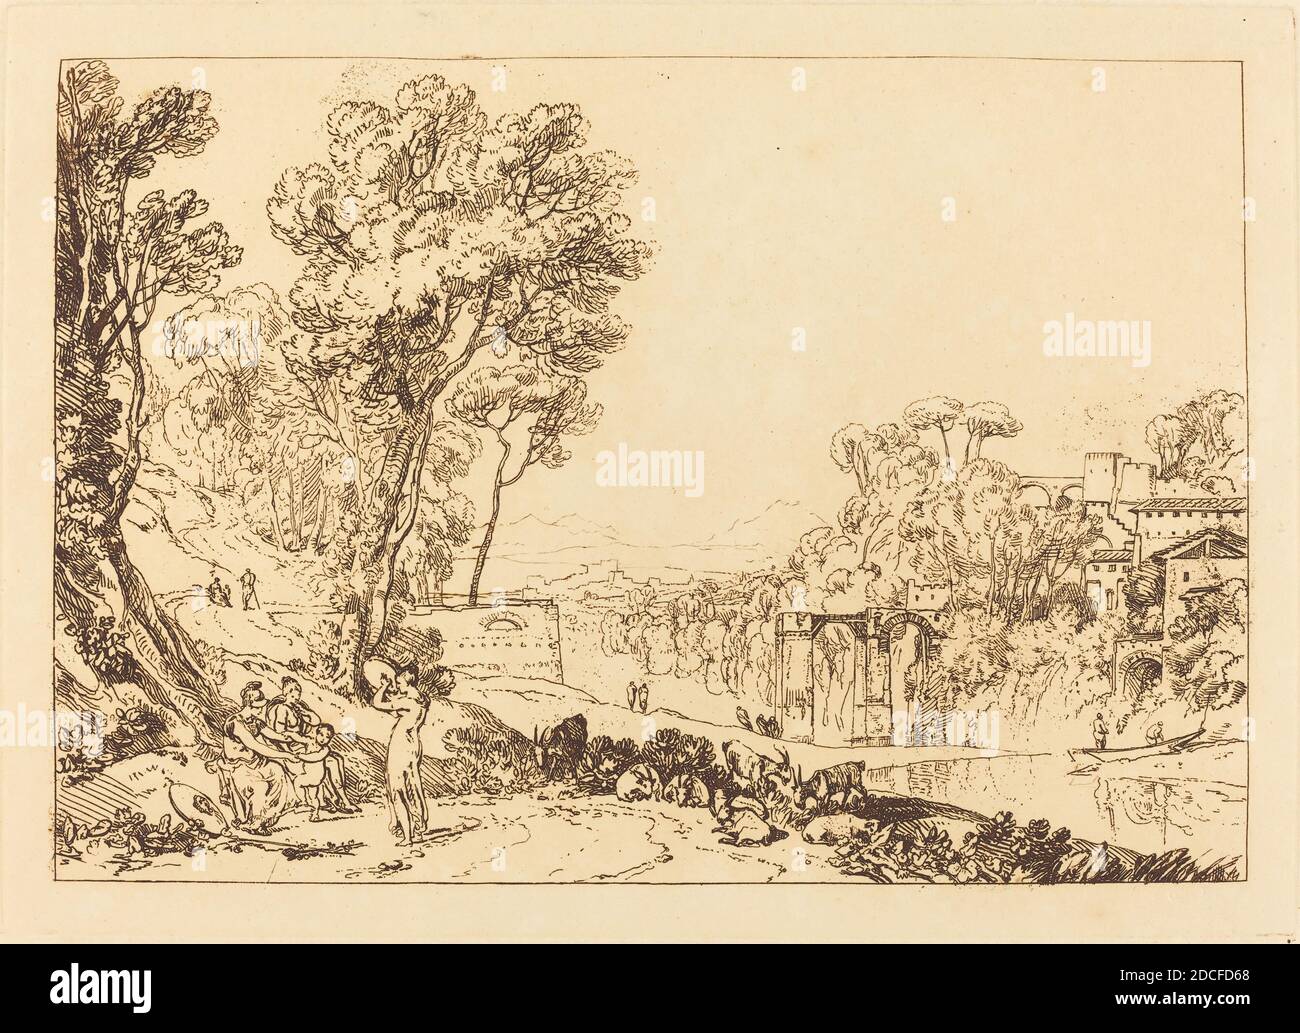 Joseph Mallord William Turner, (Künstler), Brite, 1775 - 1851, The Woman and Tambourine, Liber Studiorum, (Serie), erschienen 1807, Radierung Stockfoto